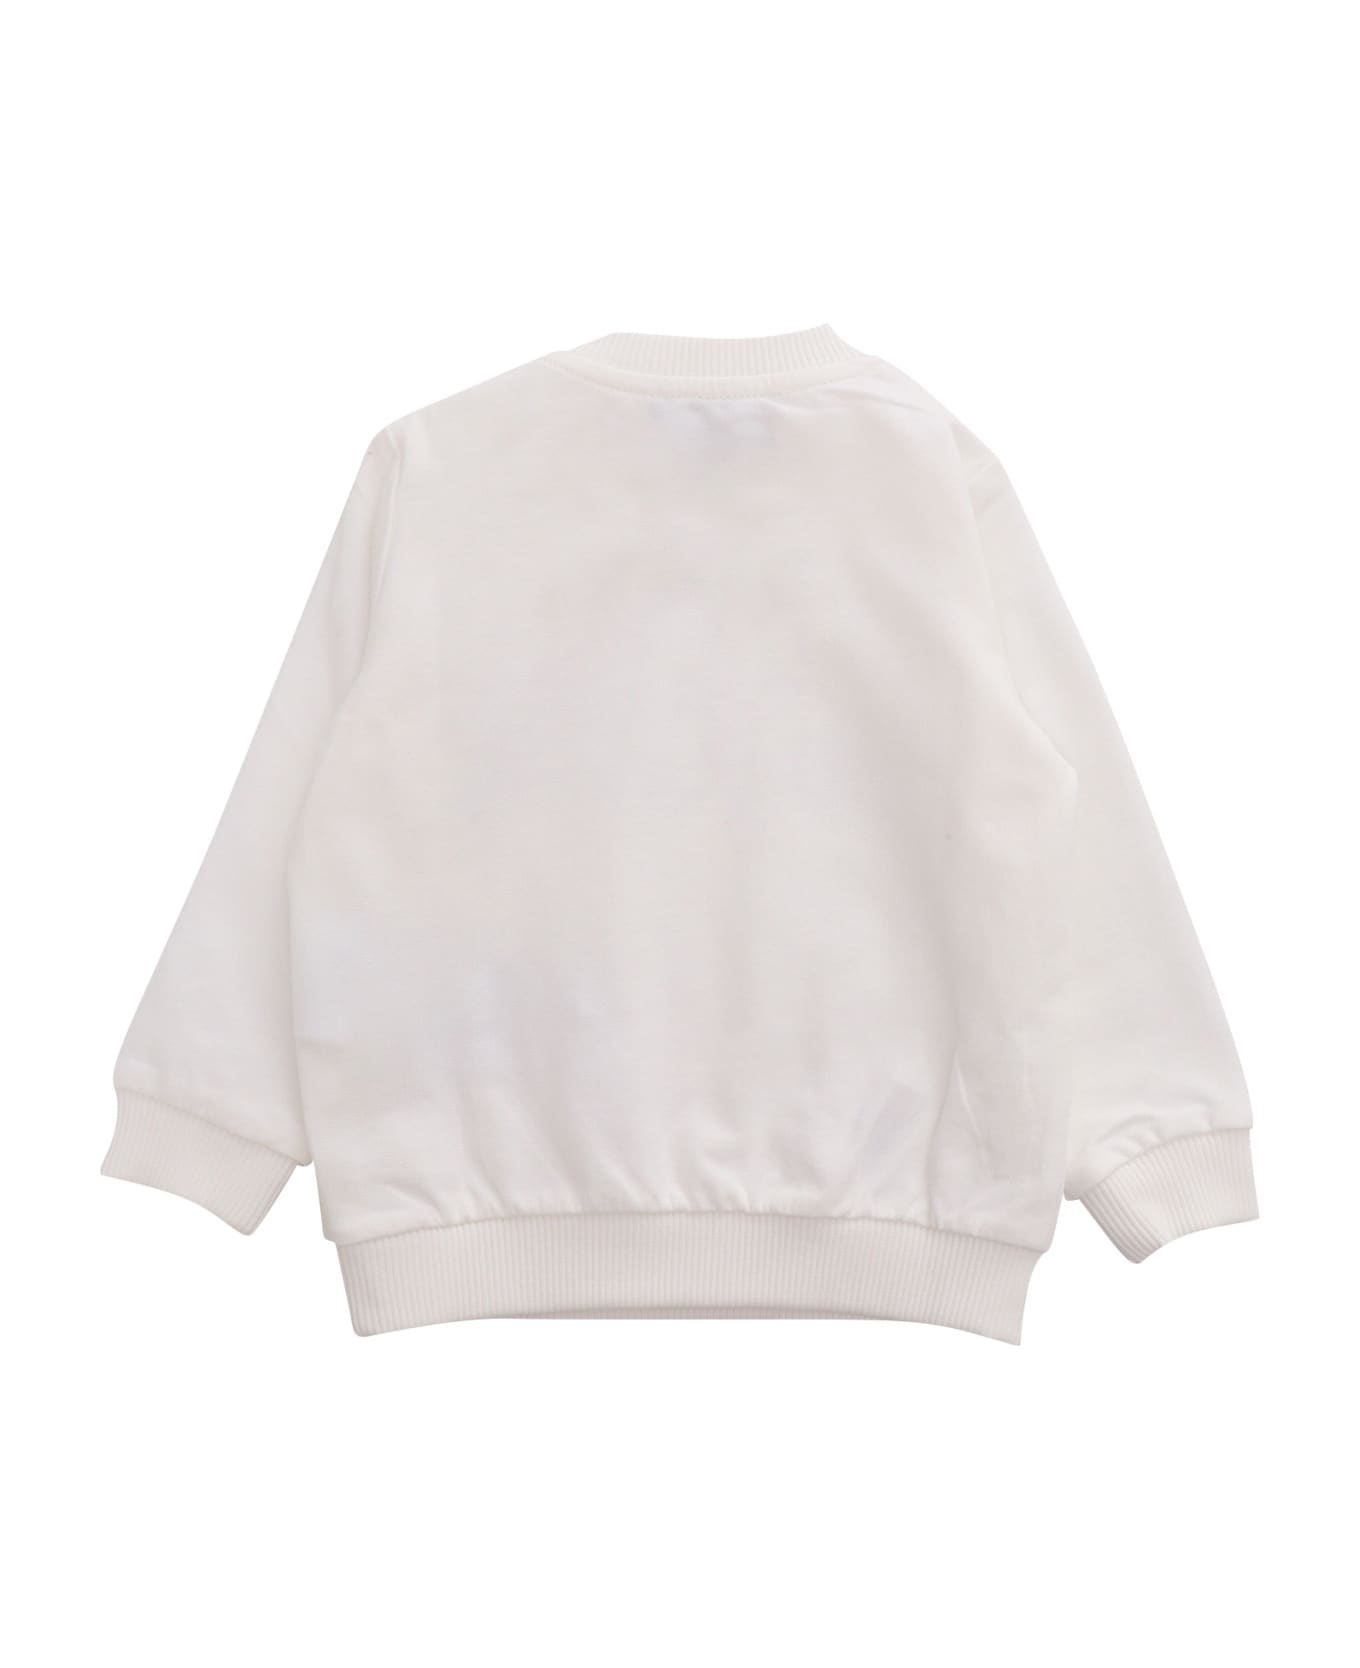 Moschino White Sweatshirt With Print - WHITE